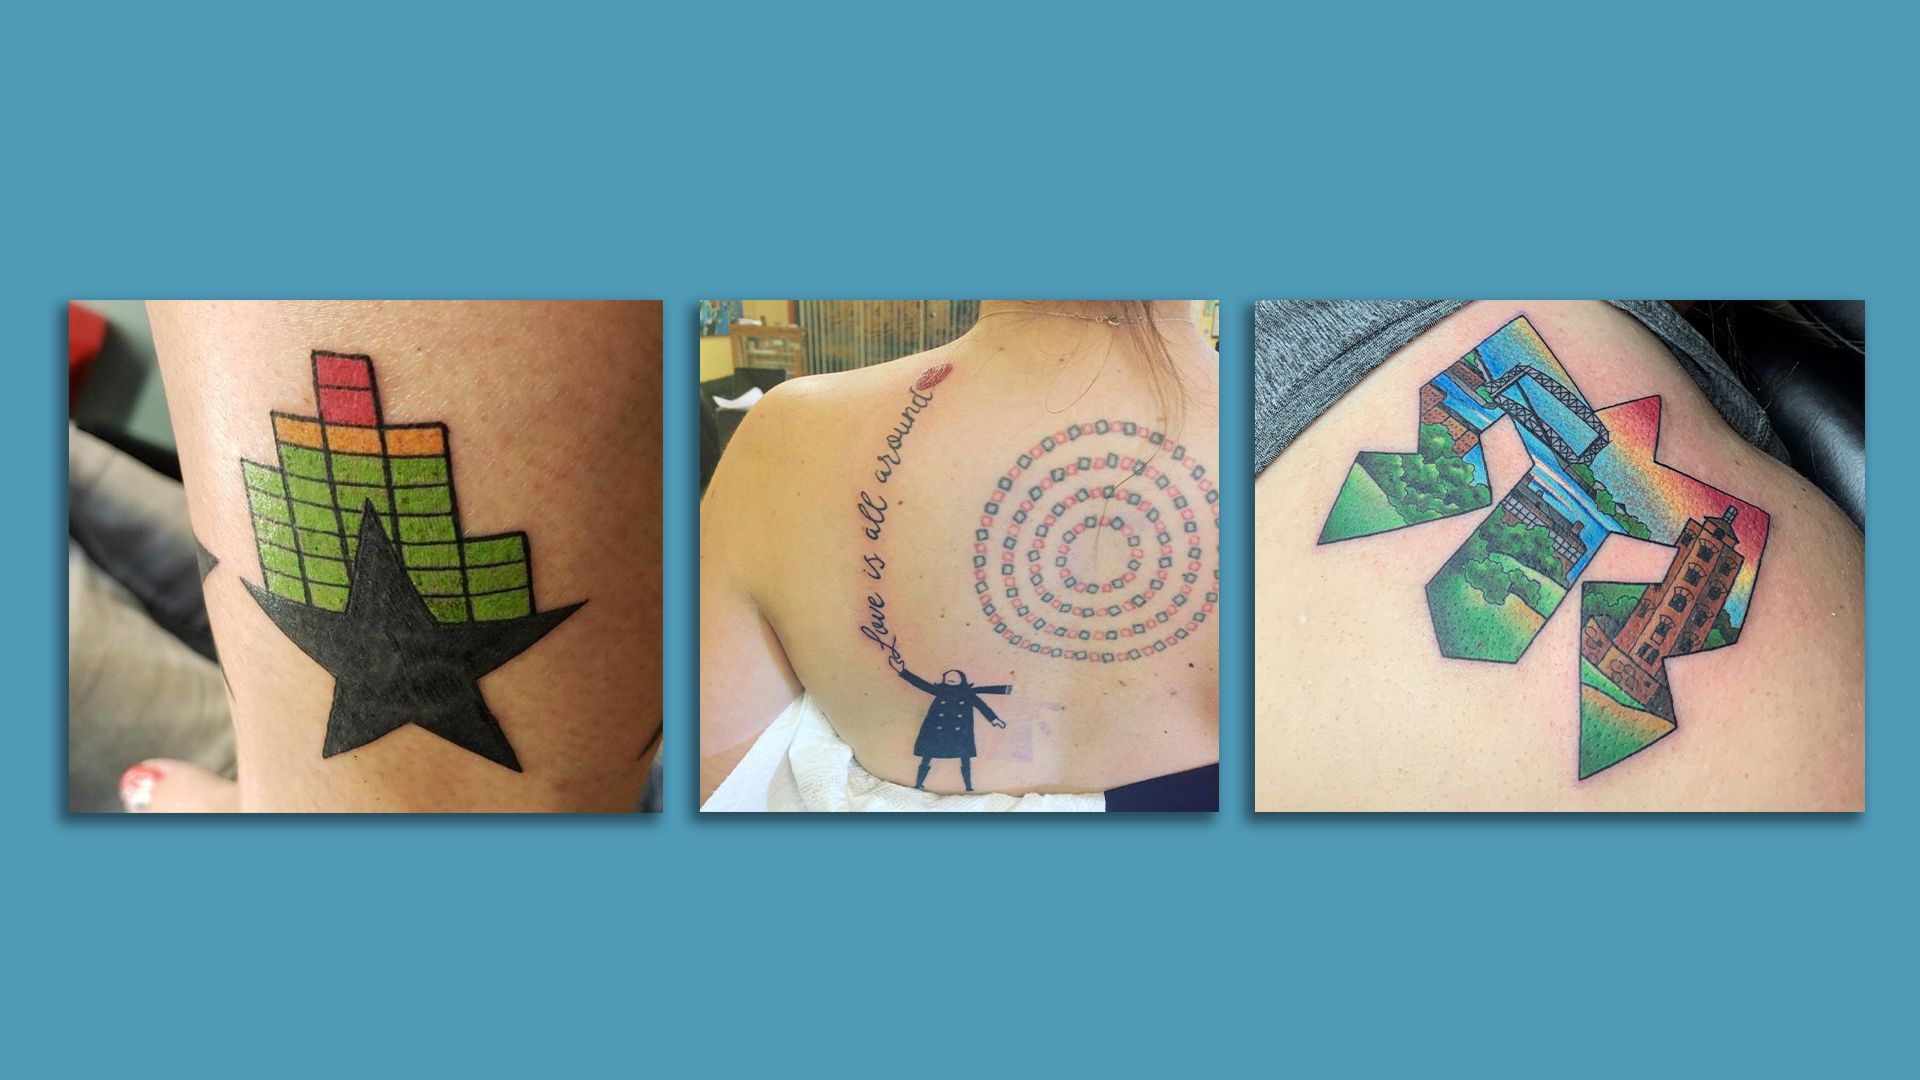 Three tattoos 